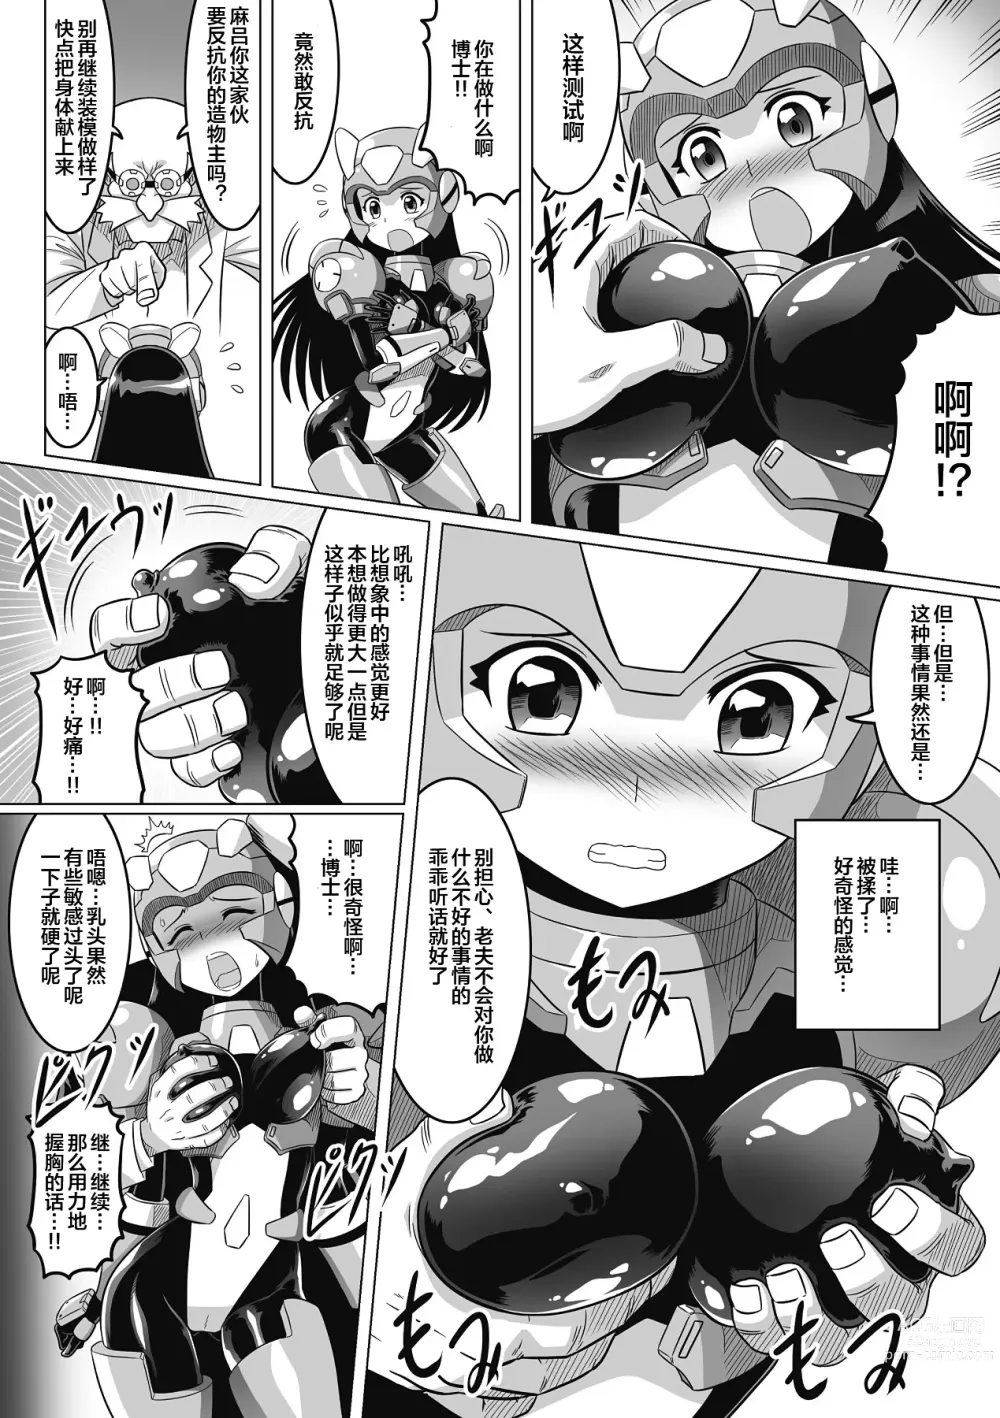 Page 6 of manga Souda, Daikaizou ja!!